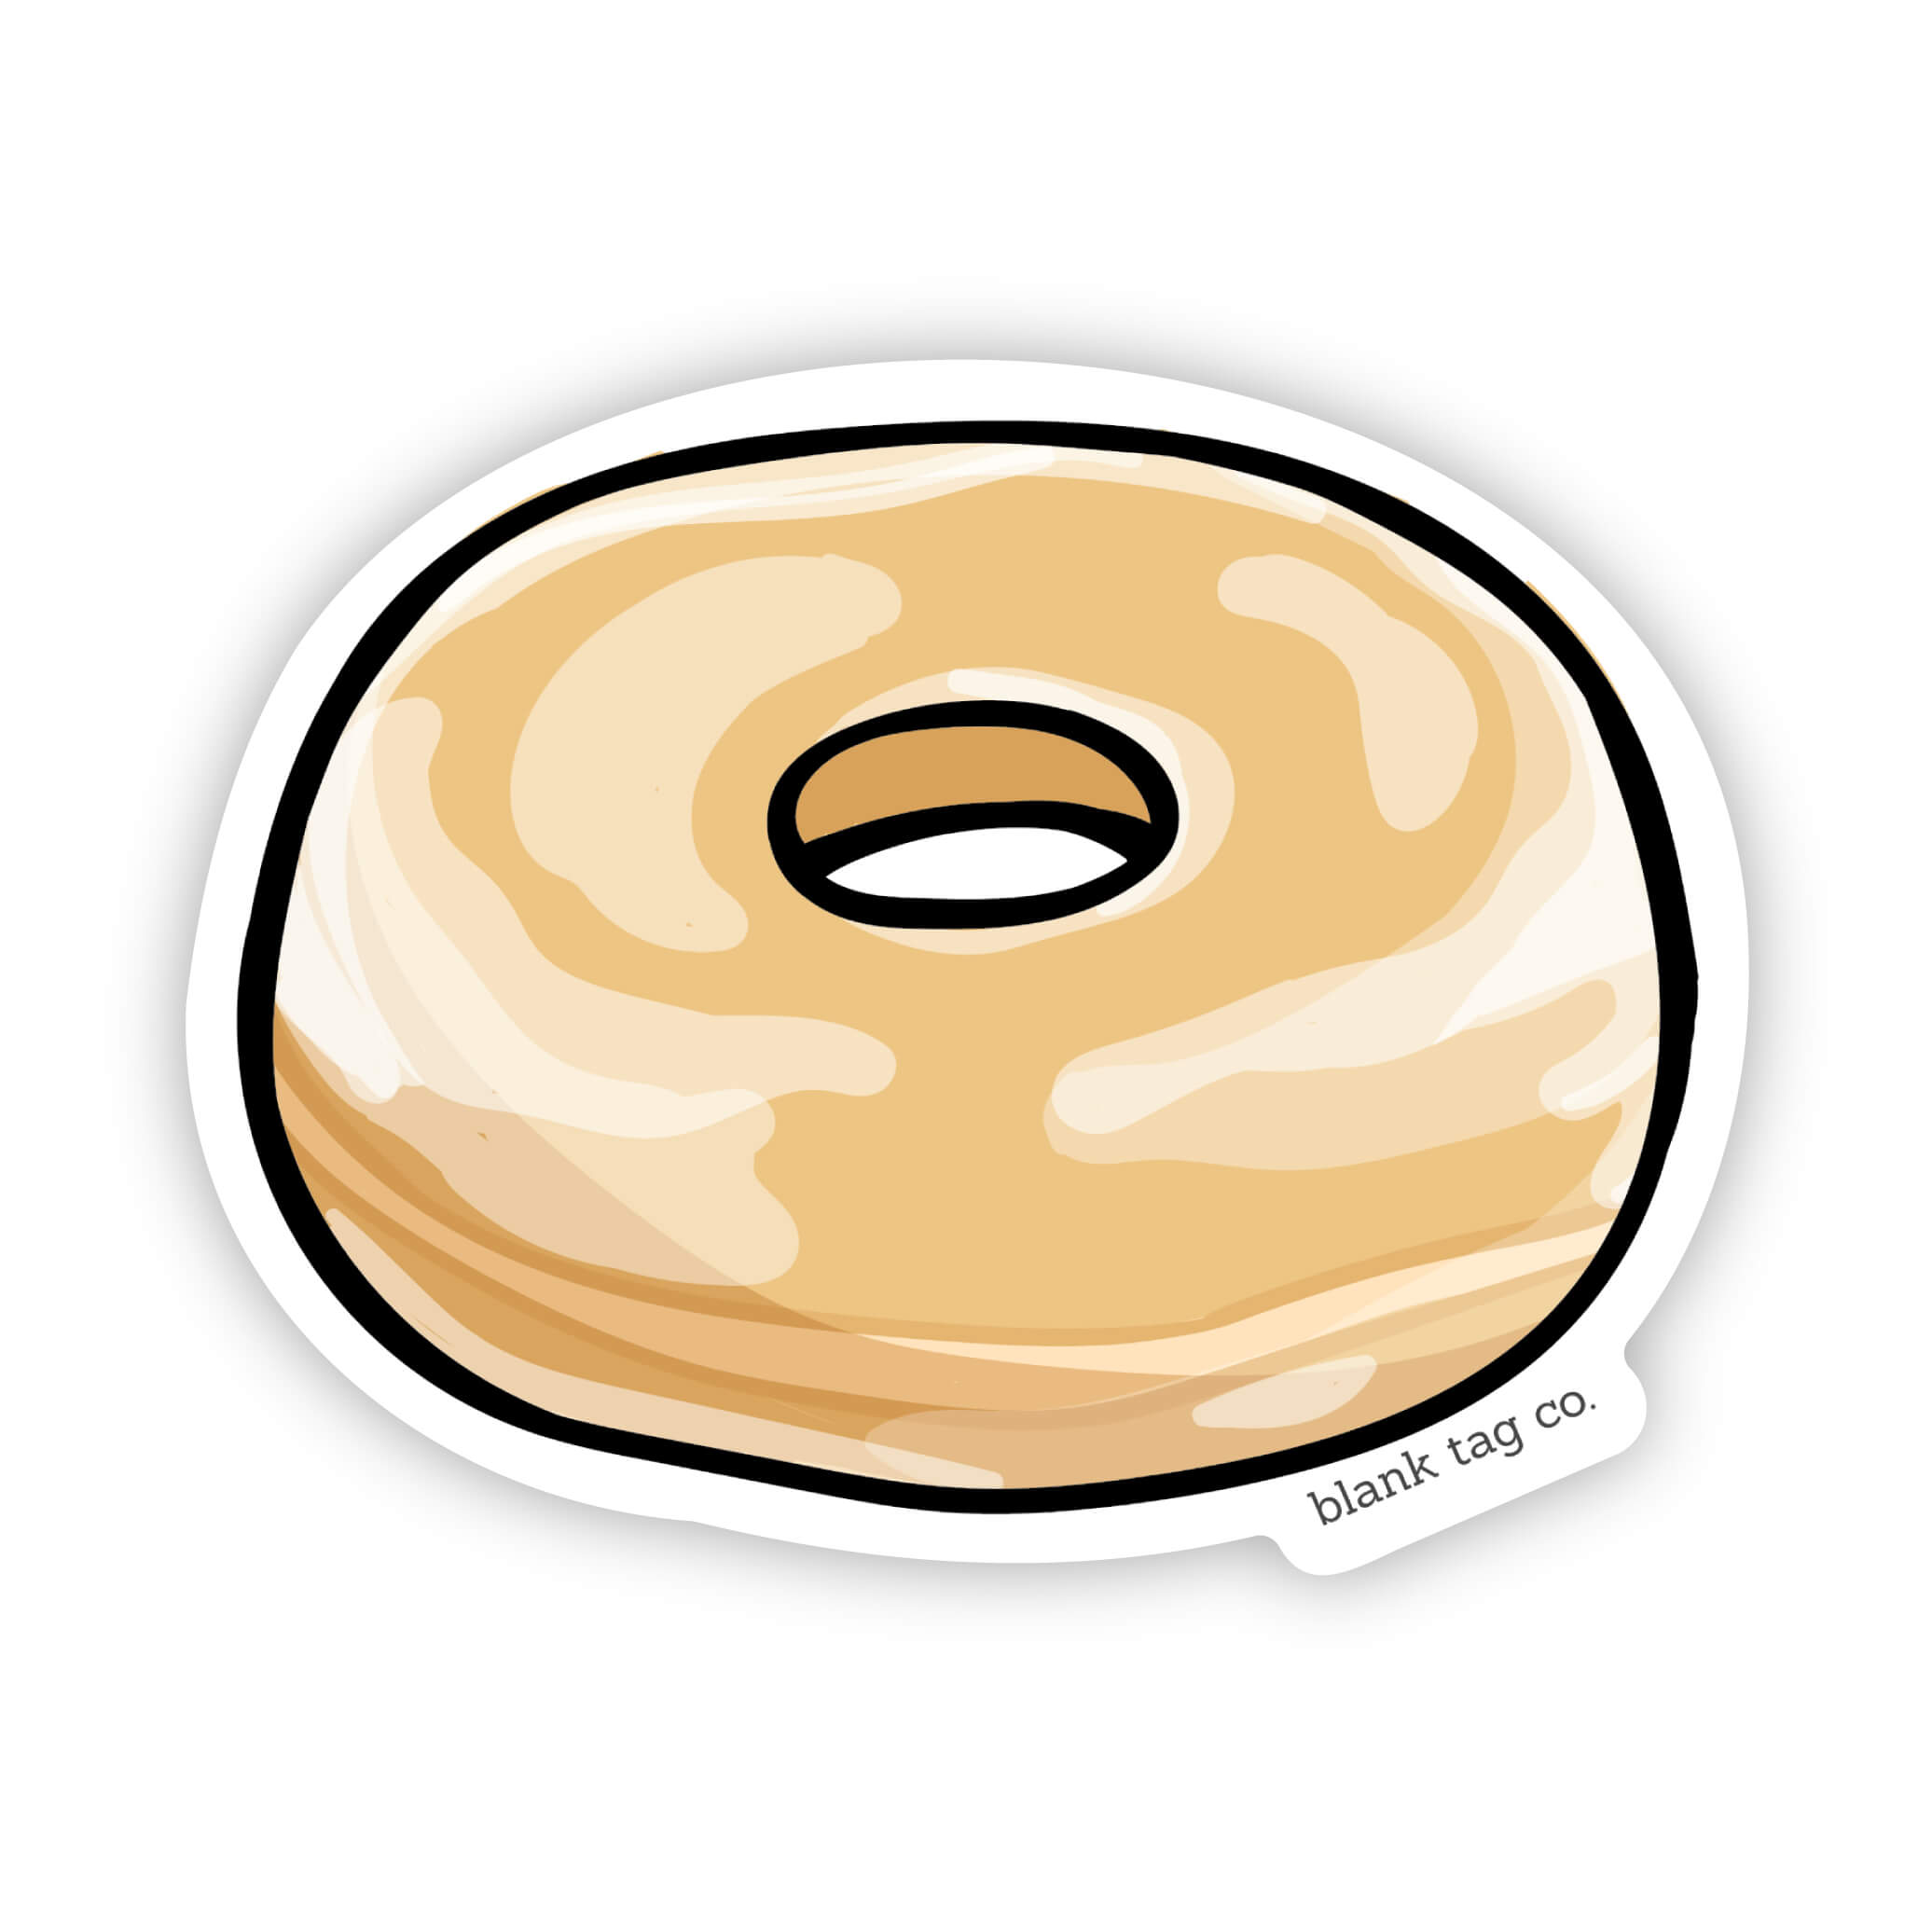 The Glazed Donut Sticker